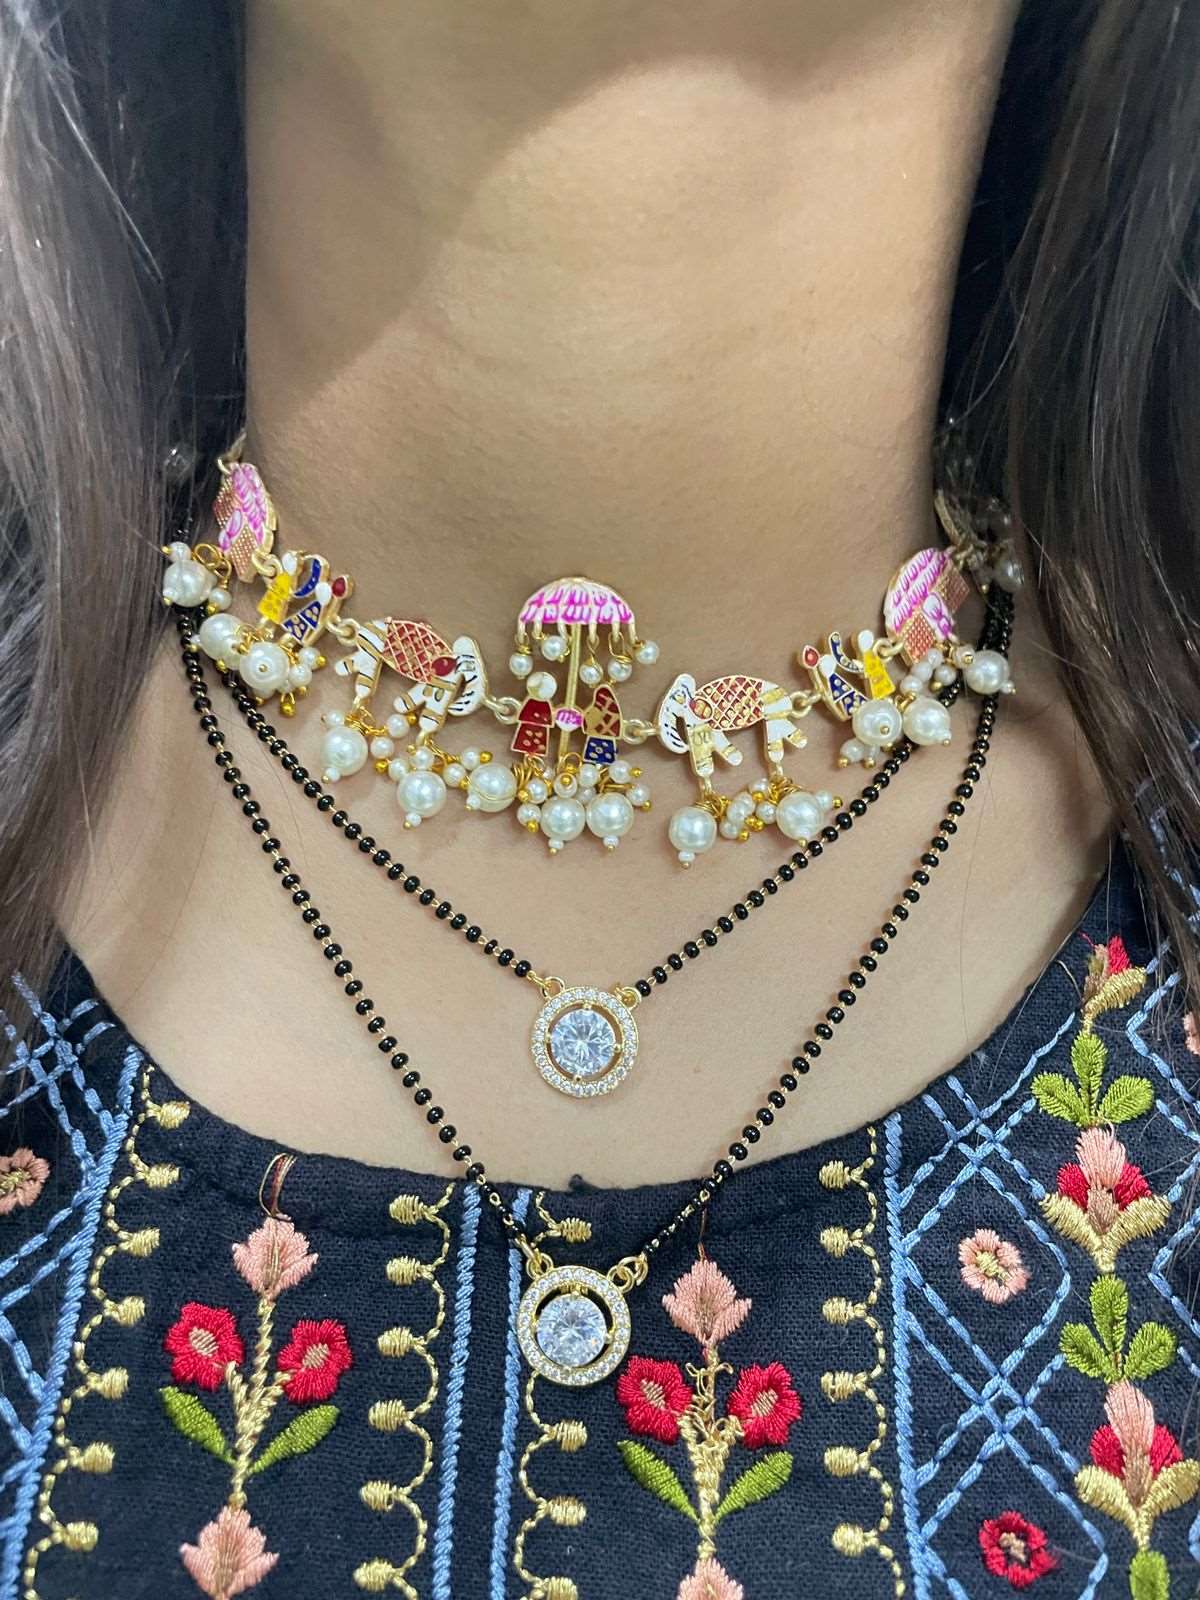 Amandeep Sidhu Inspired Double Gold Stone Mangalsutra & Doli Barat Necklace - Abdesignsjewellery